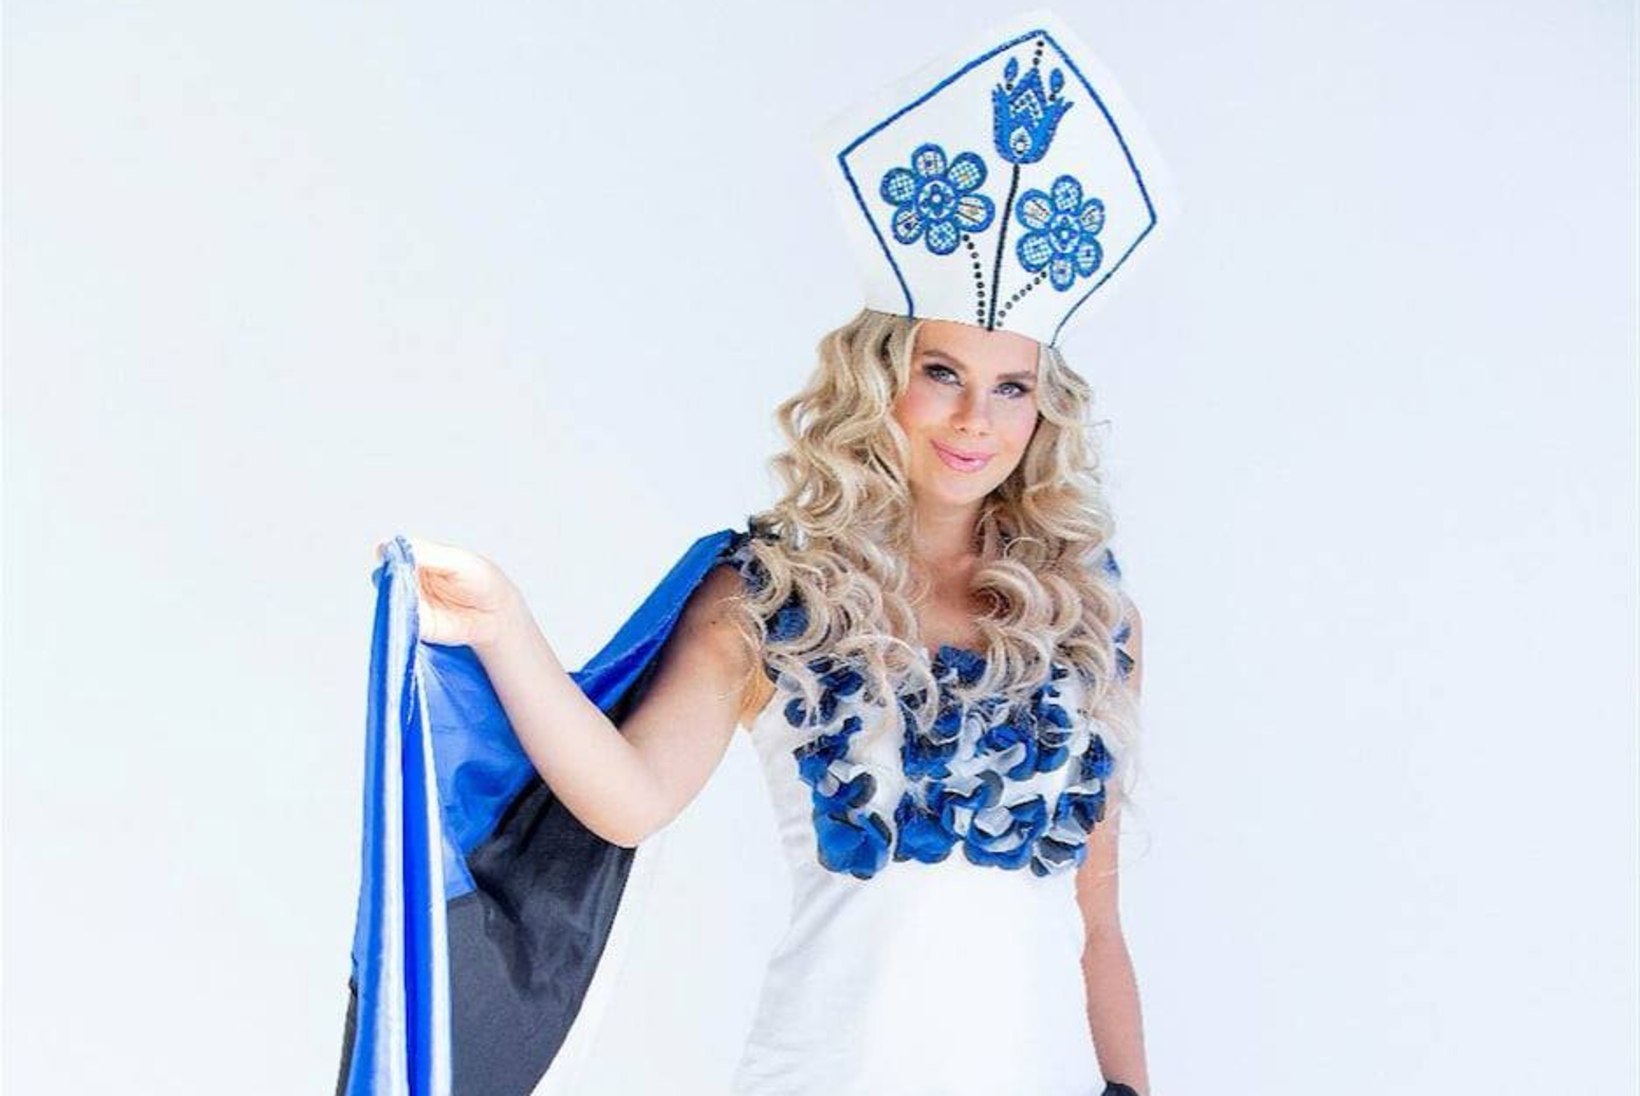 PILDID | Vaata, milliste efektsete kostüümidega valmistub Maria Heleen Tõniste maailma kauneima tiitlit vallutama!